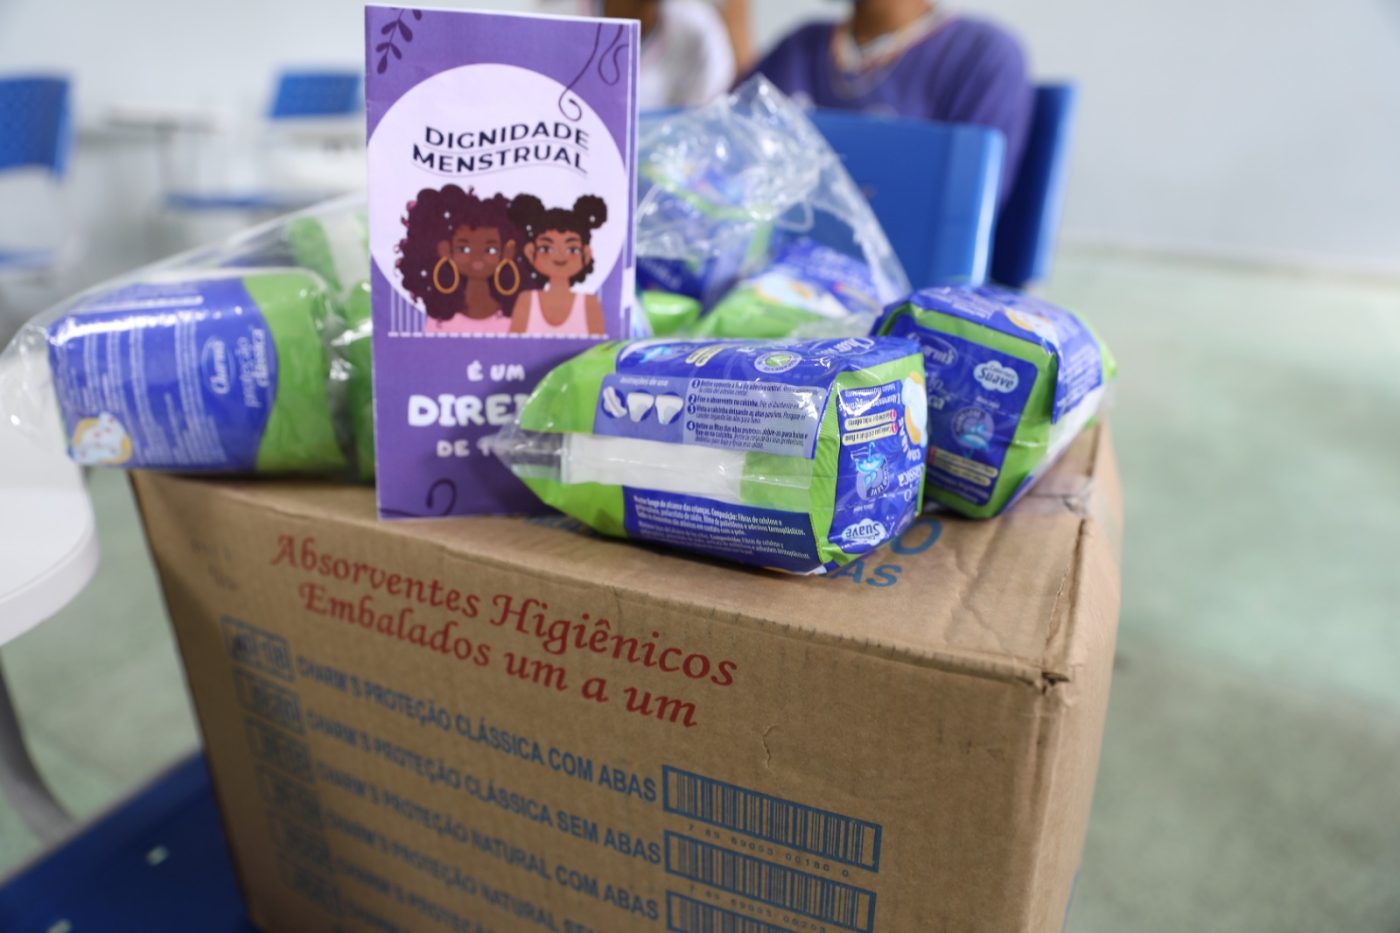 Programa Dignidade Menstrual beneficia mais de 225 mil pessoas em escolas estaduais baianas